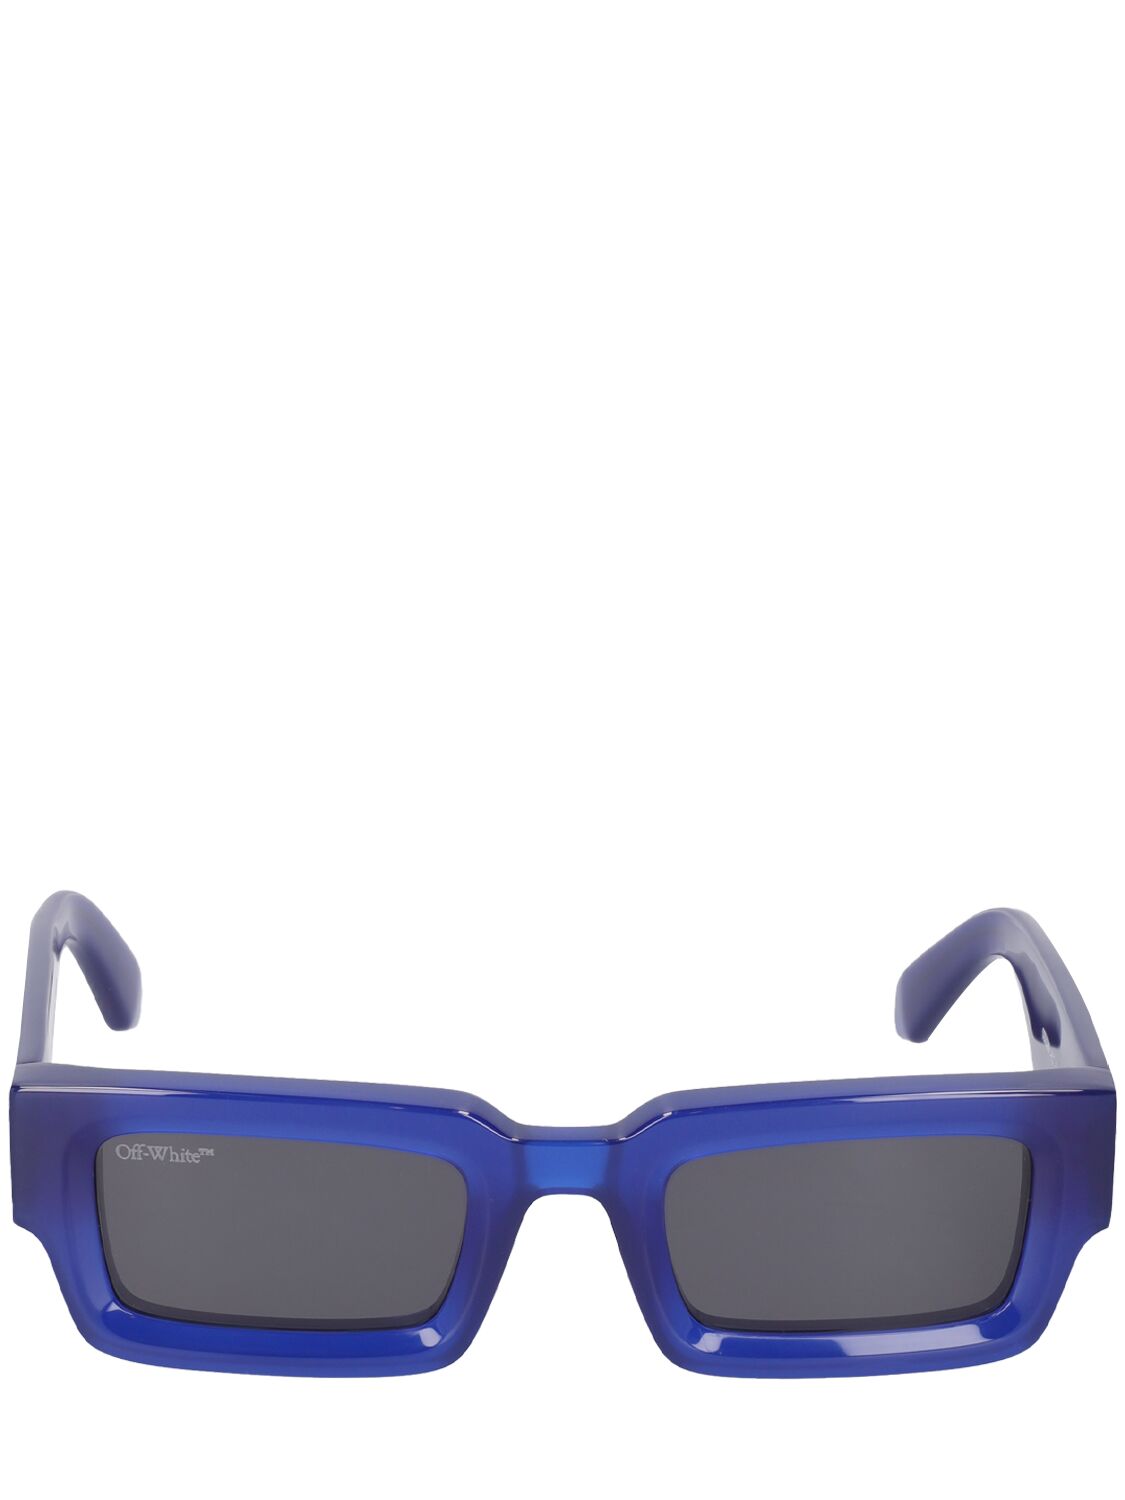 Off-white Lecce - Blu Sunglasses